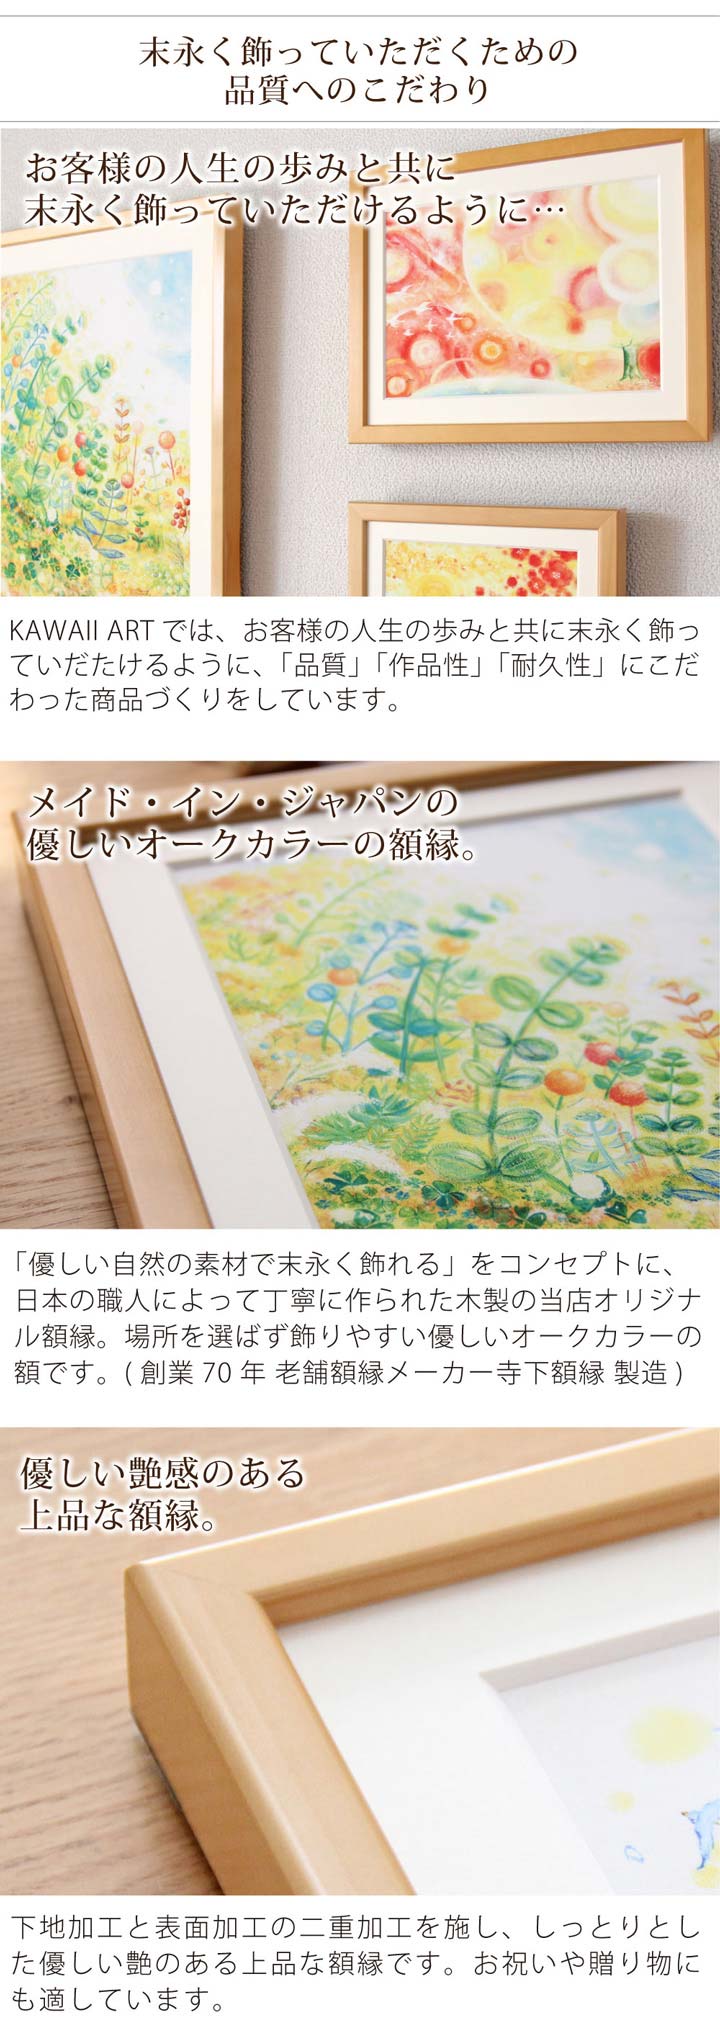 可愛い絵画 インテリア 絵 部屋や玄関に飾る絵 「幸せの花束(虹色